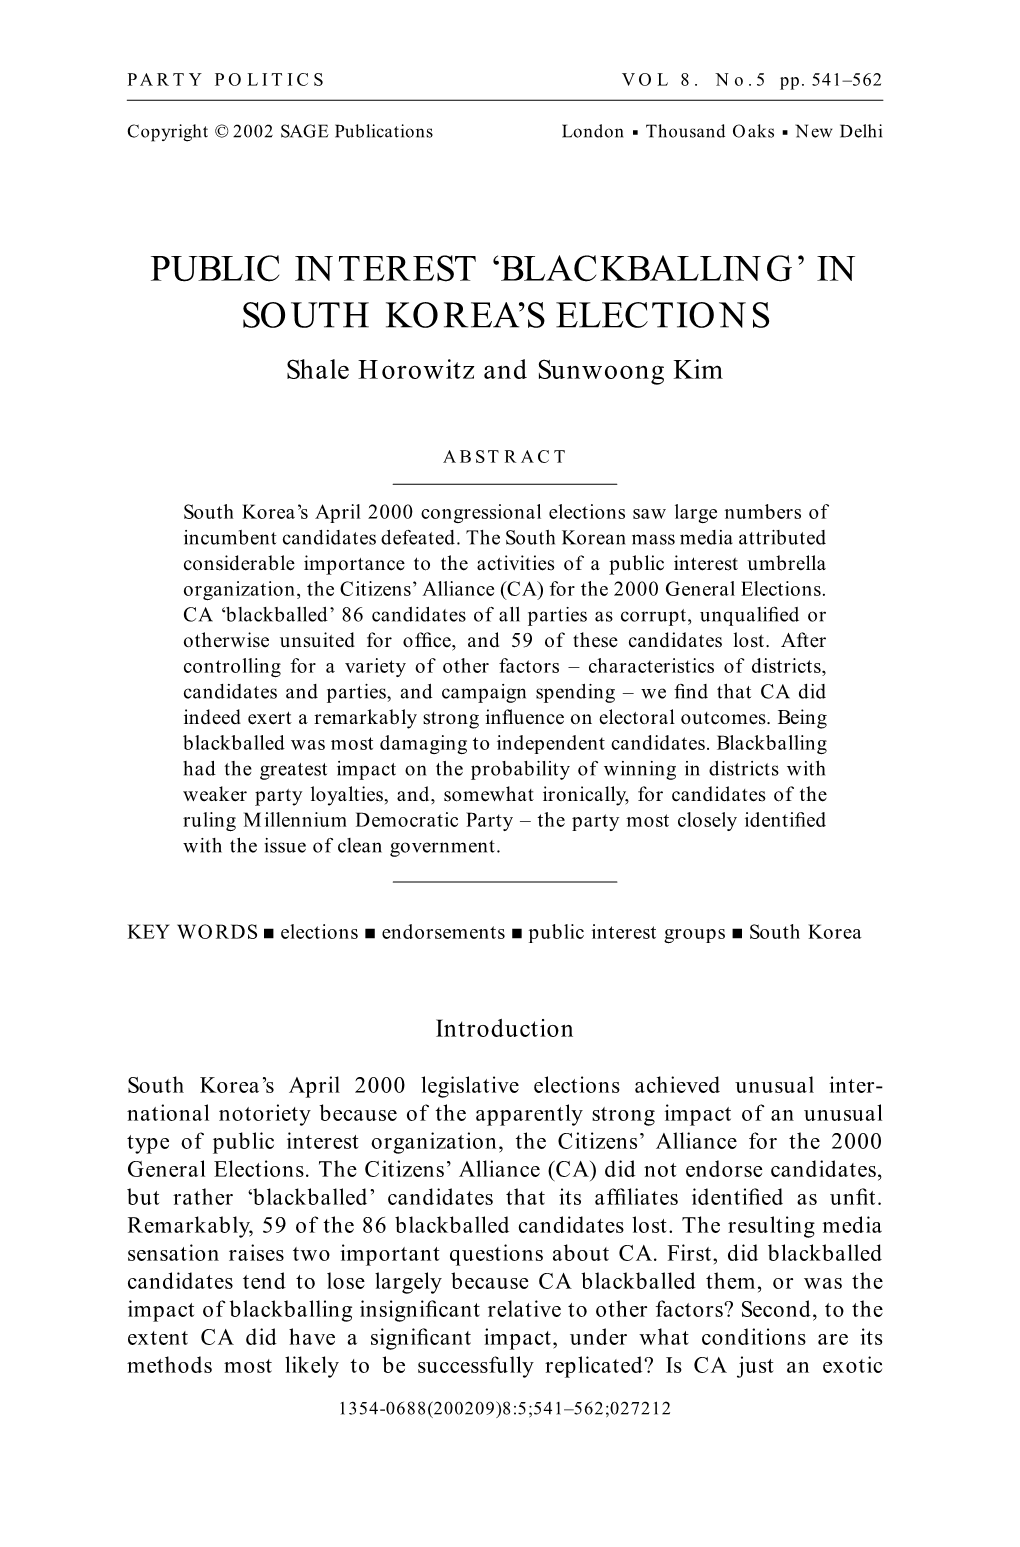 Public Interest 'Blackballing' in South Korea's Elections